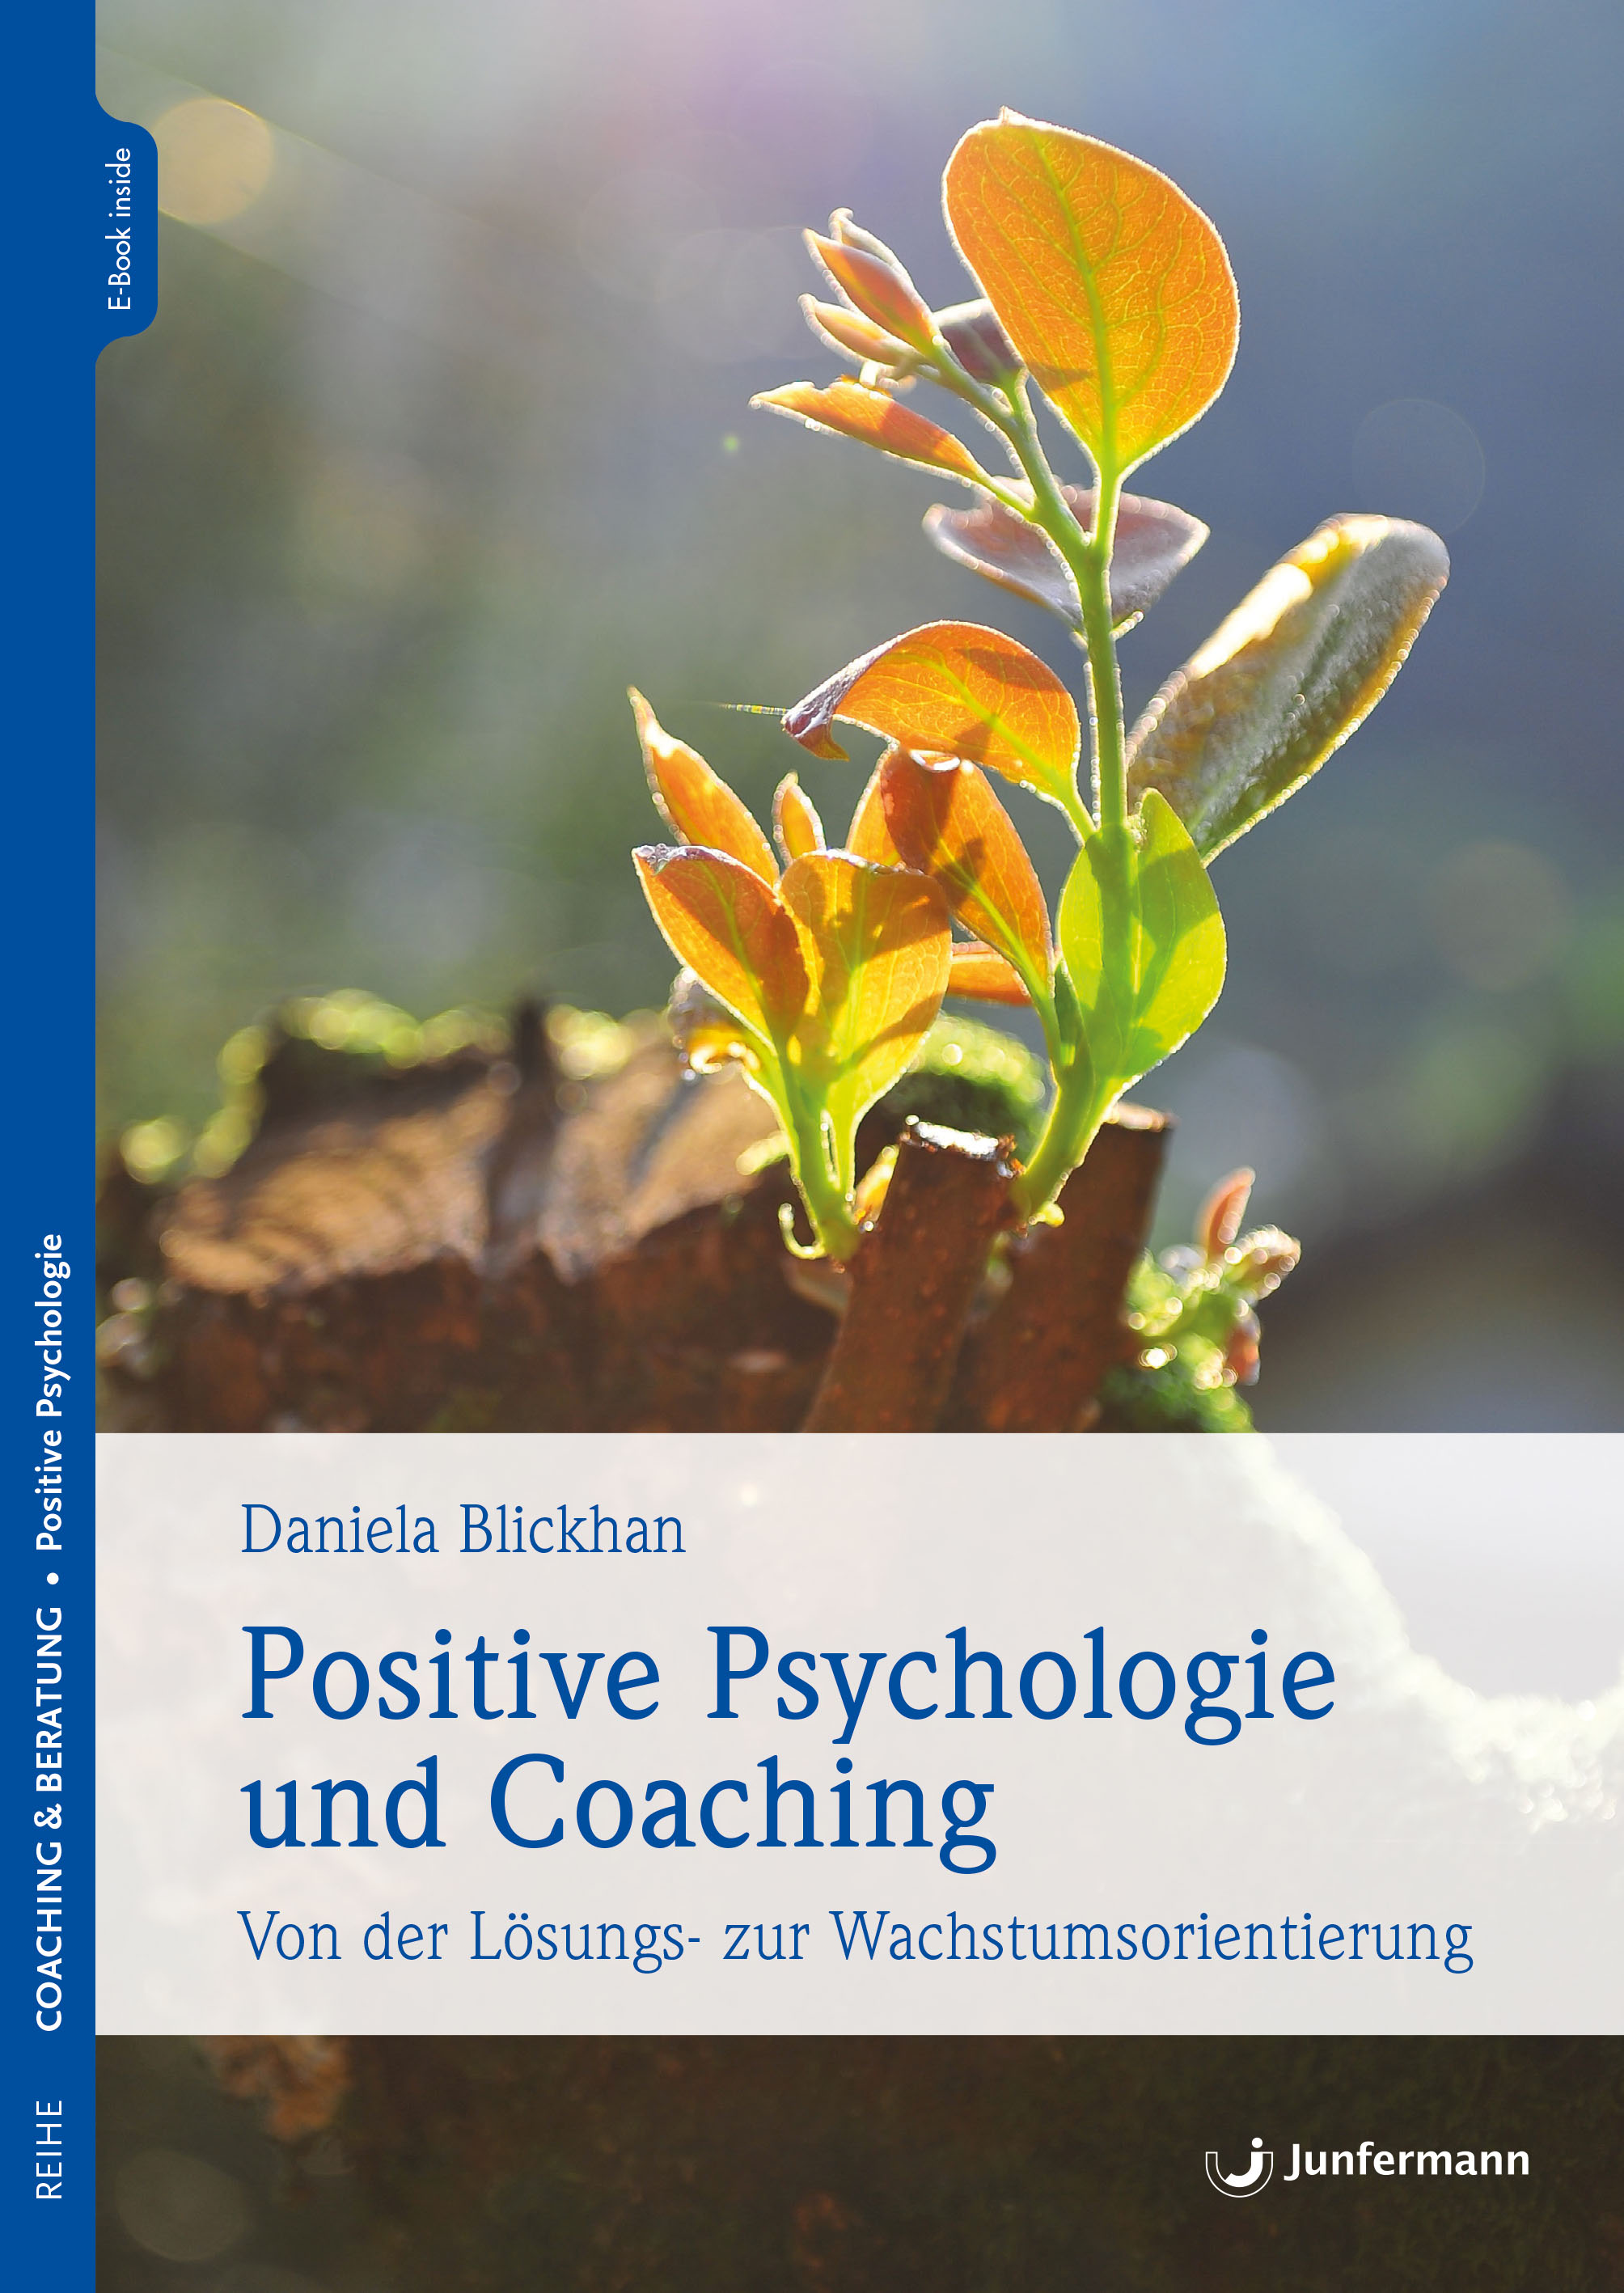 Daniela Blickhan: Positive Psychologie und Coaching - Von der Lösungs- zur Wachstumsorientierung. Junfermann Verlag 